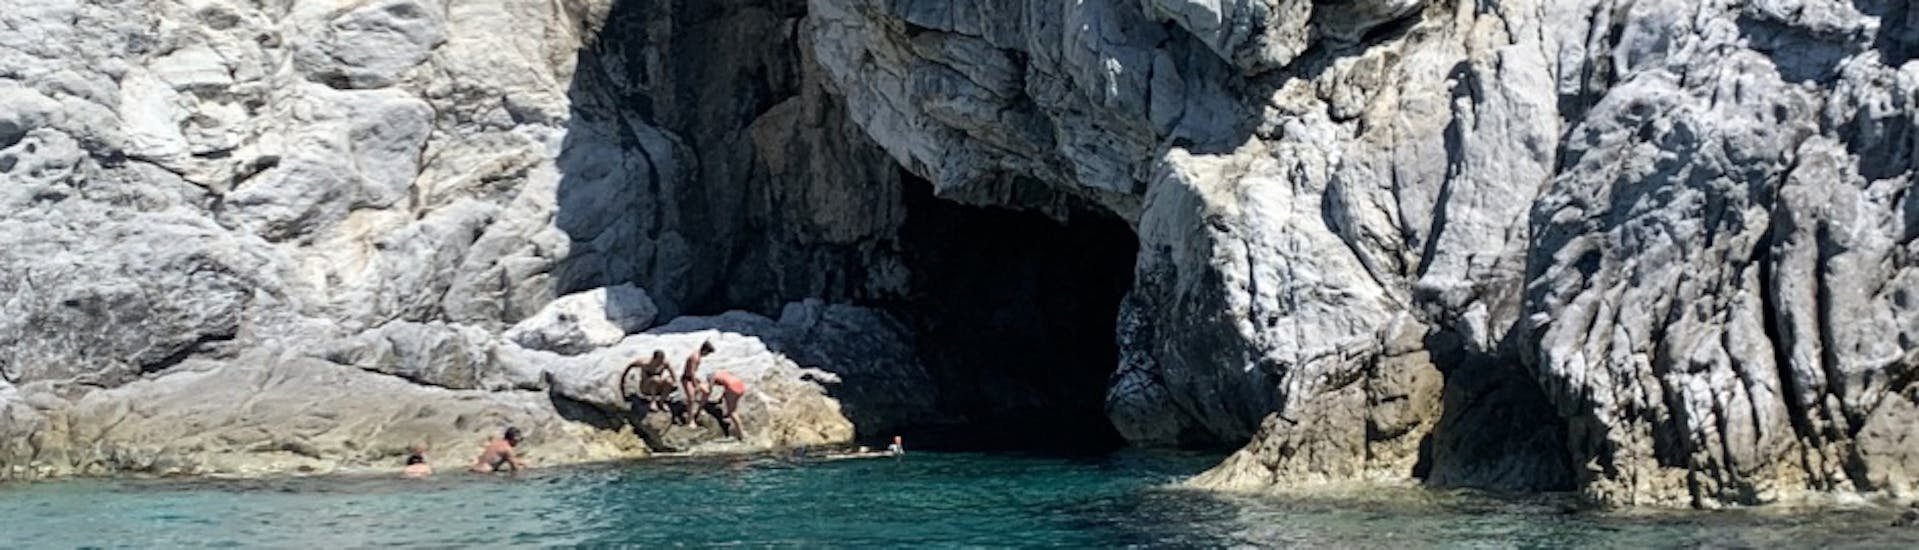 Uitzicht op Blue Grotto tijdens onze privéboottocht langs de zuidkust van Elba met Baiarda Dive Boat Excursions Elba.